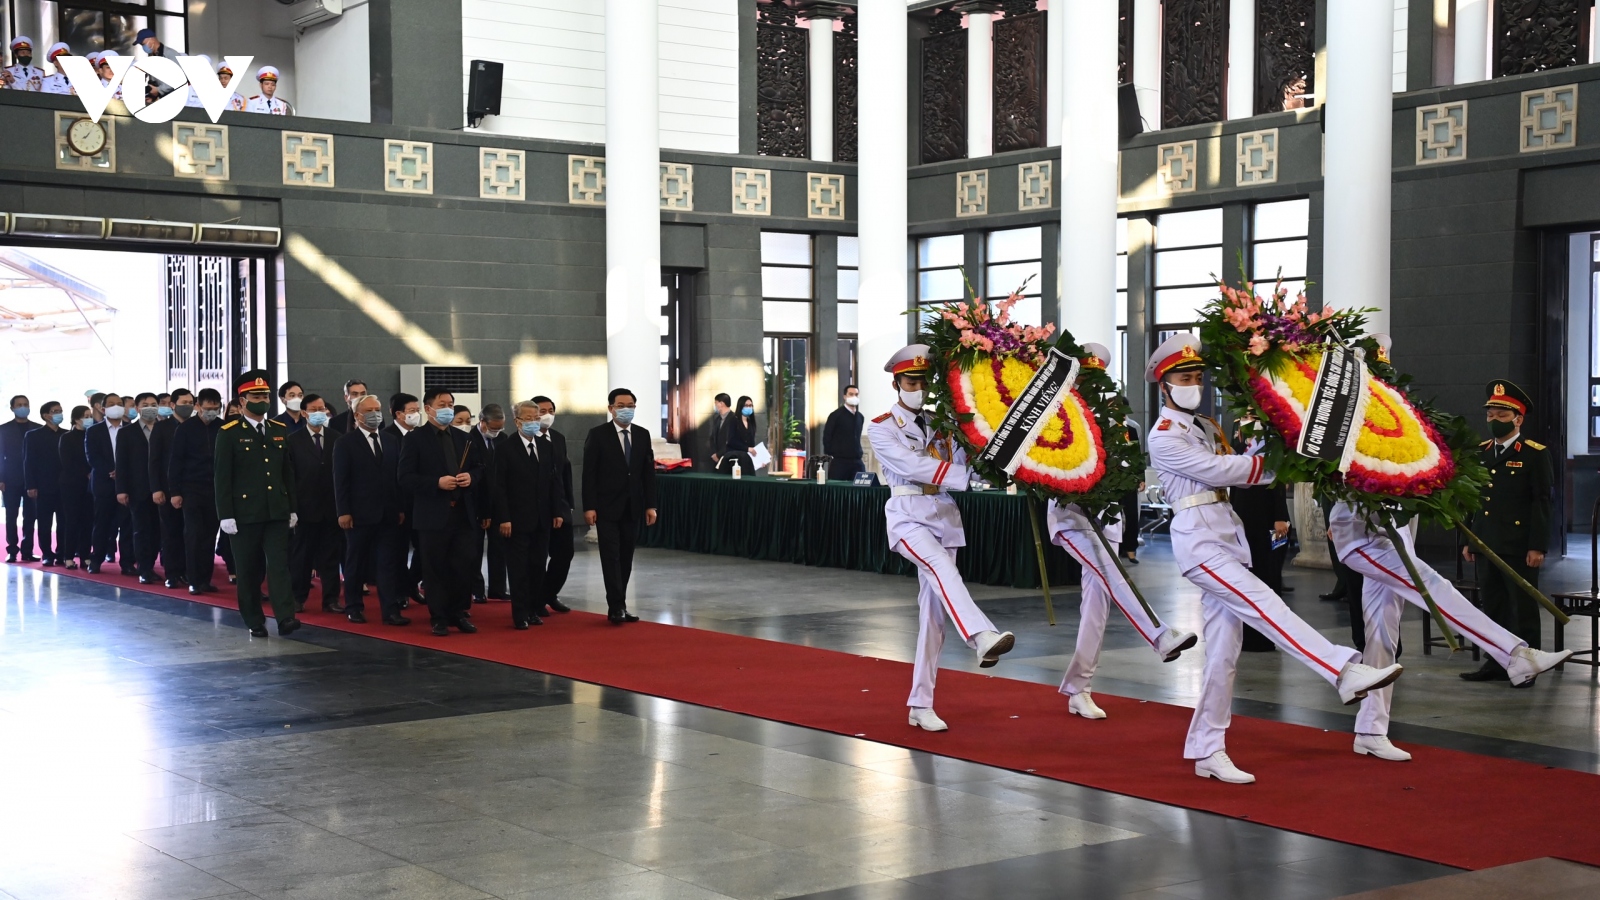 Hình ảnh: Lễ viếng nguyên Phó Thủ tướng Trương Vĩnh Trọng tại Hà Nội